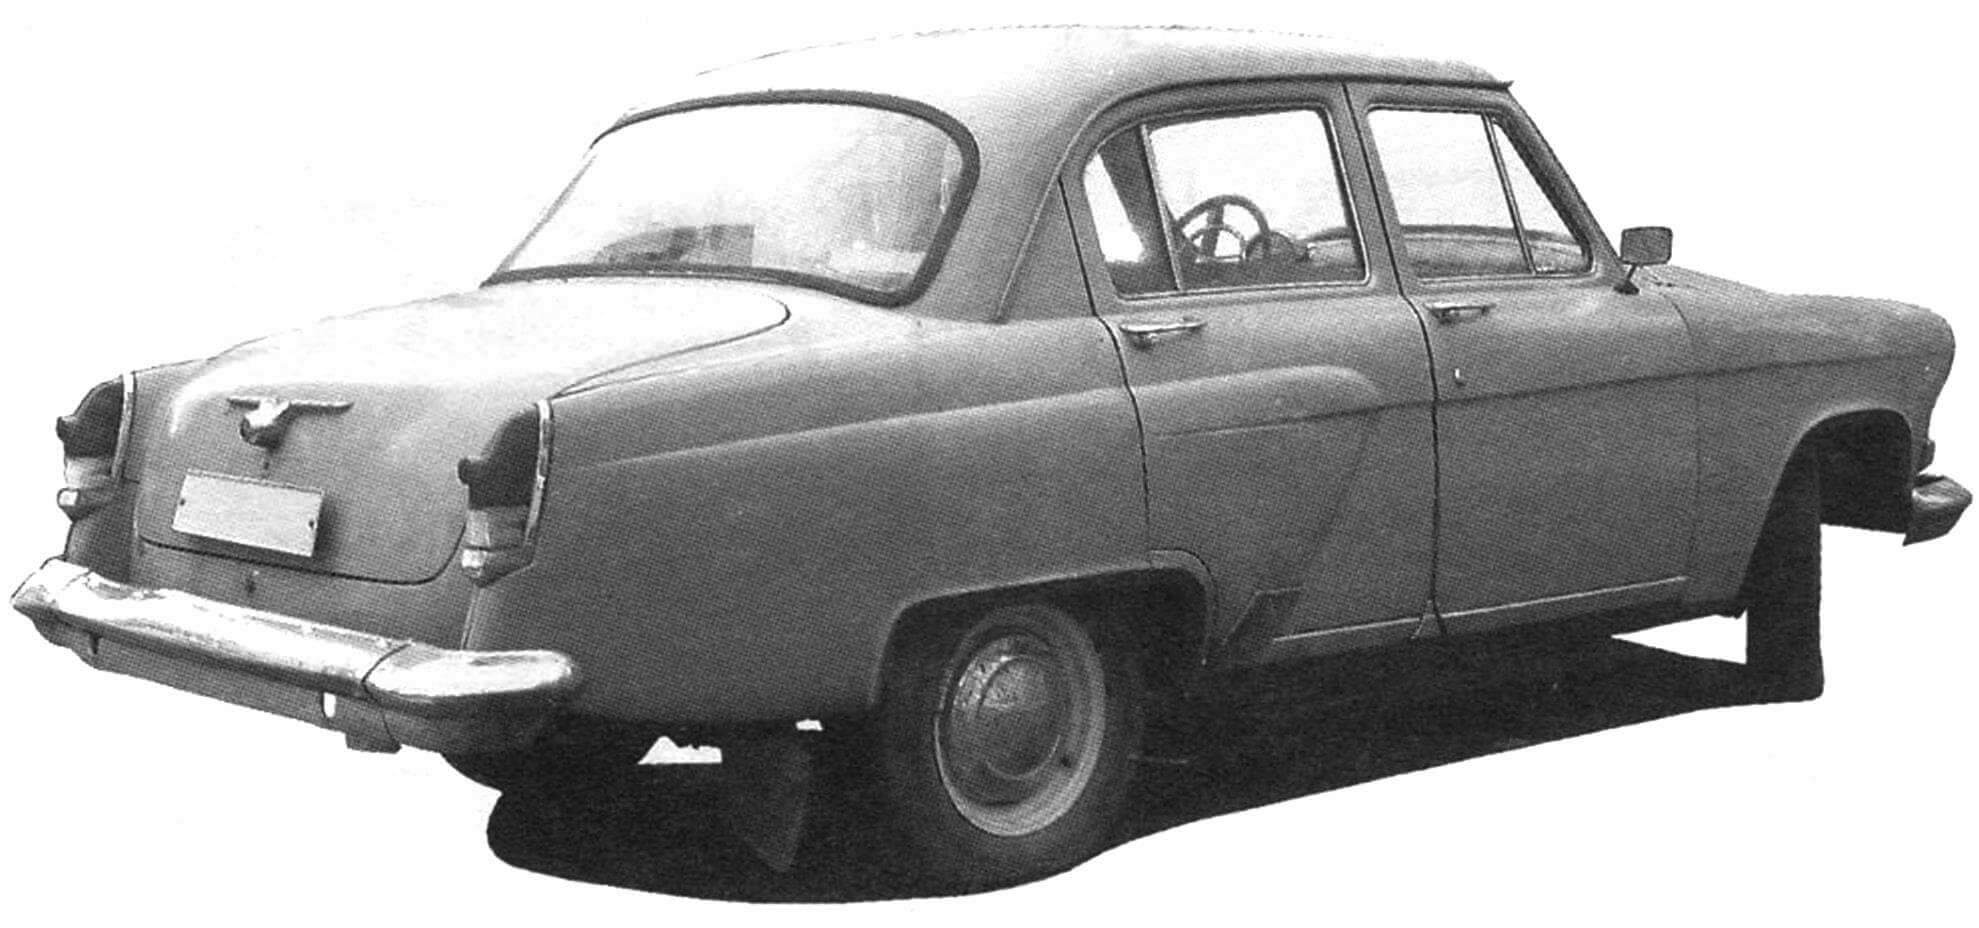 Автомобиль ГАЗ-21Р - автомобиль, выпускавшийся на ГАЗе с 1962 года